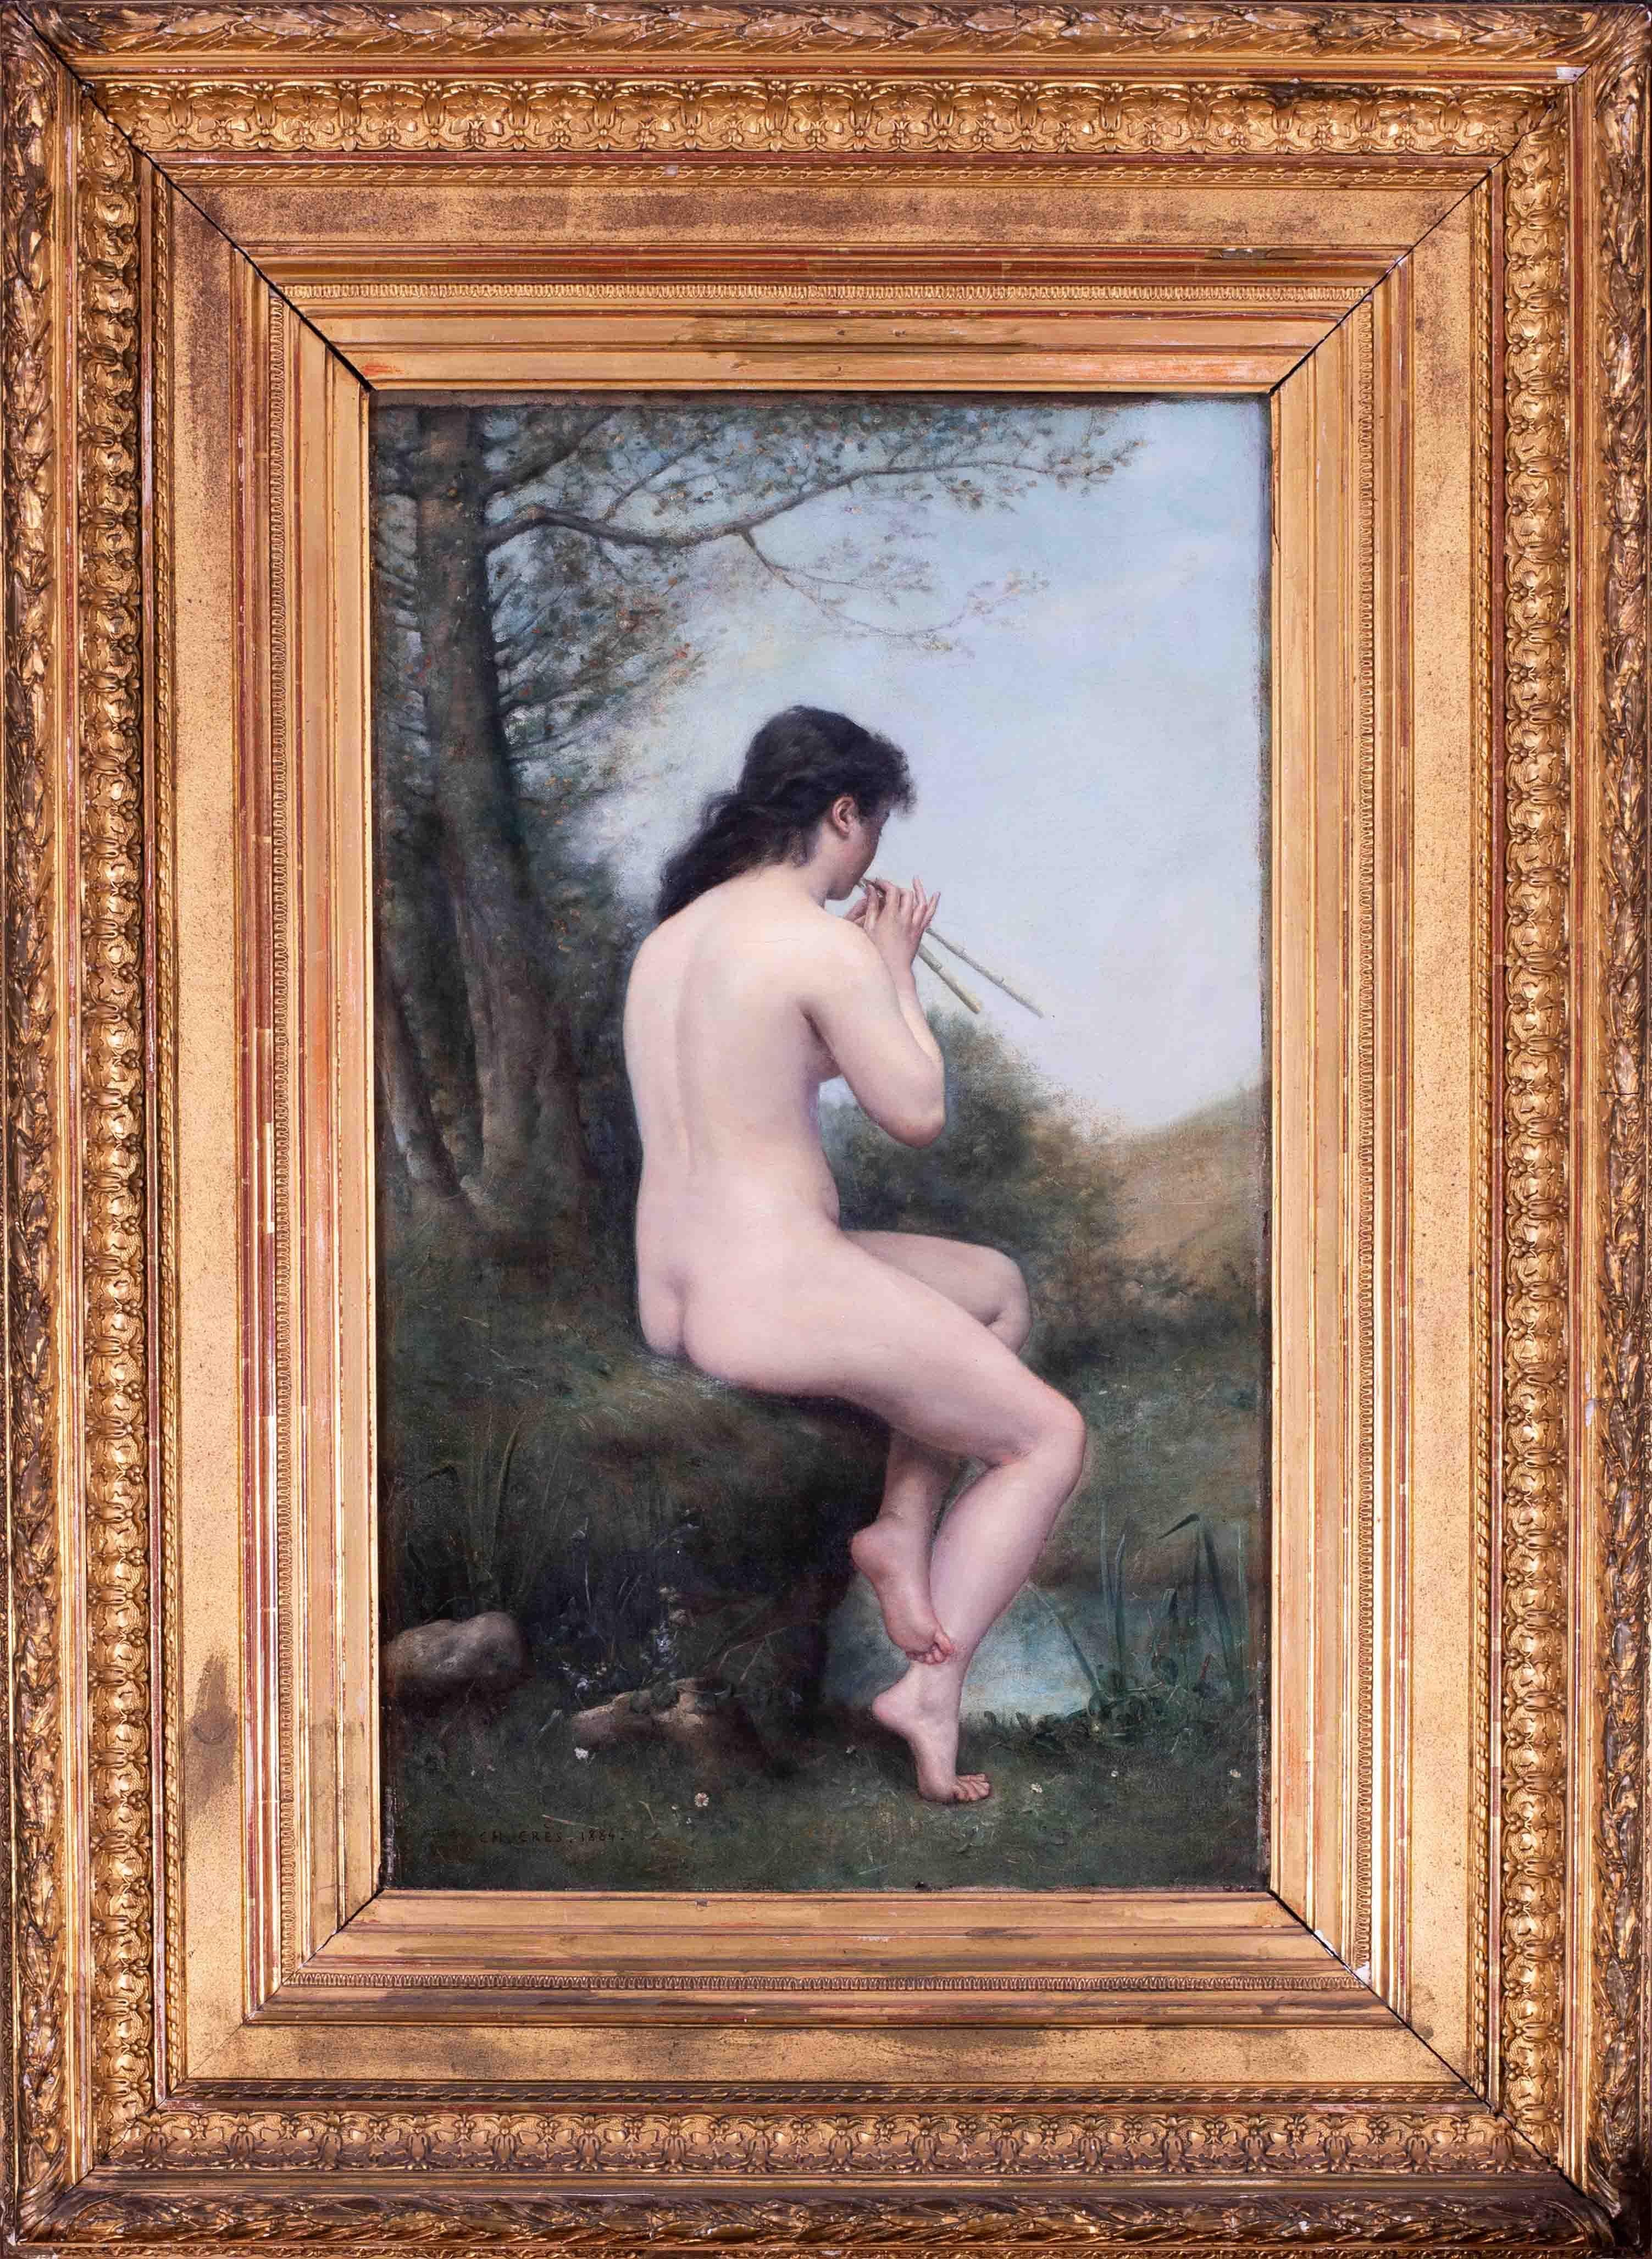 Peinture à l'huile française du 19e siècle représentant une nymphe jouant de la flûte, une femme nue